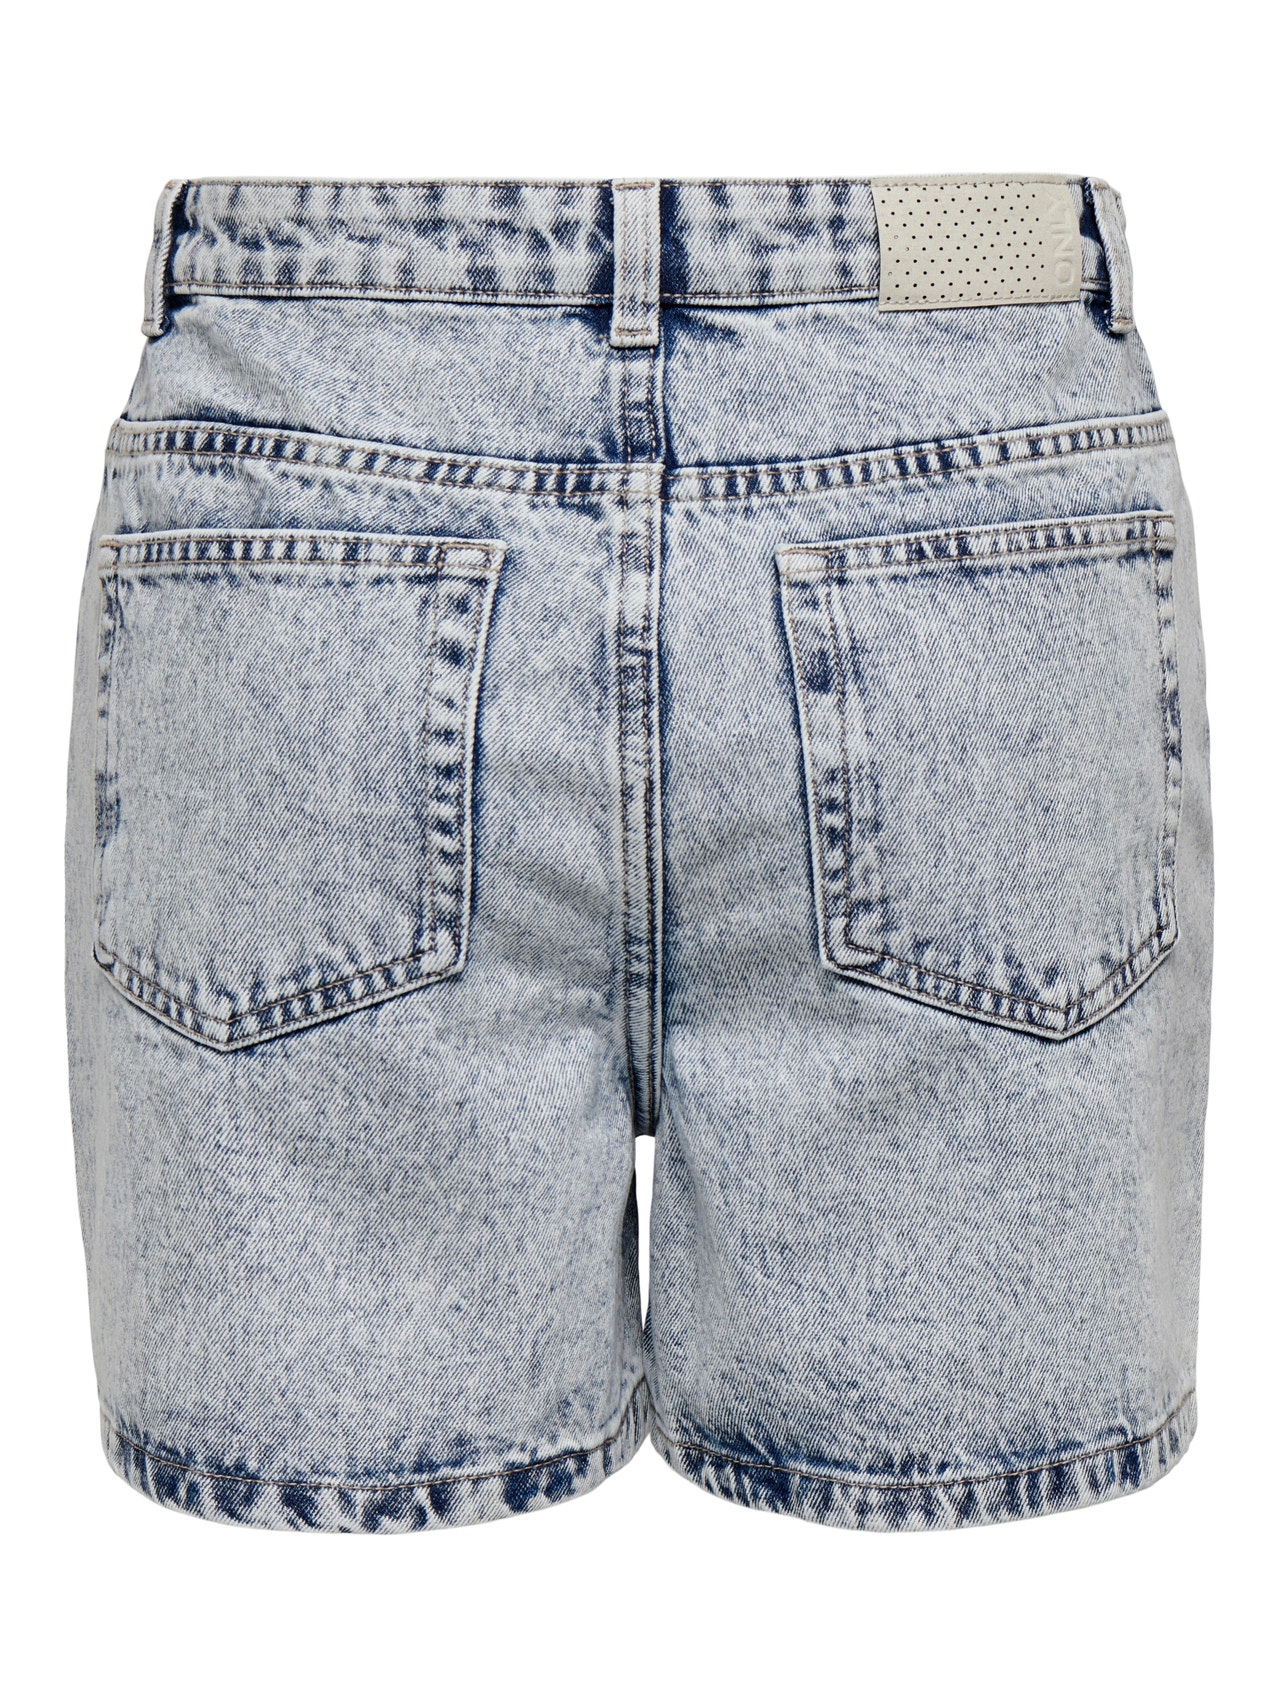 ONLY Regular Fit High waist Shorts -Light Blue Denim - 15245657